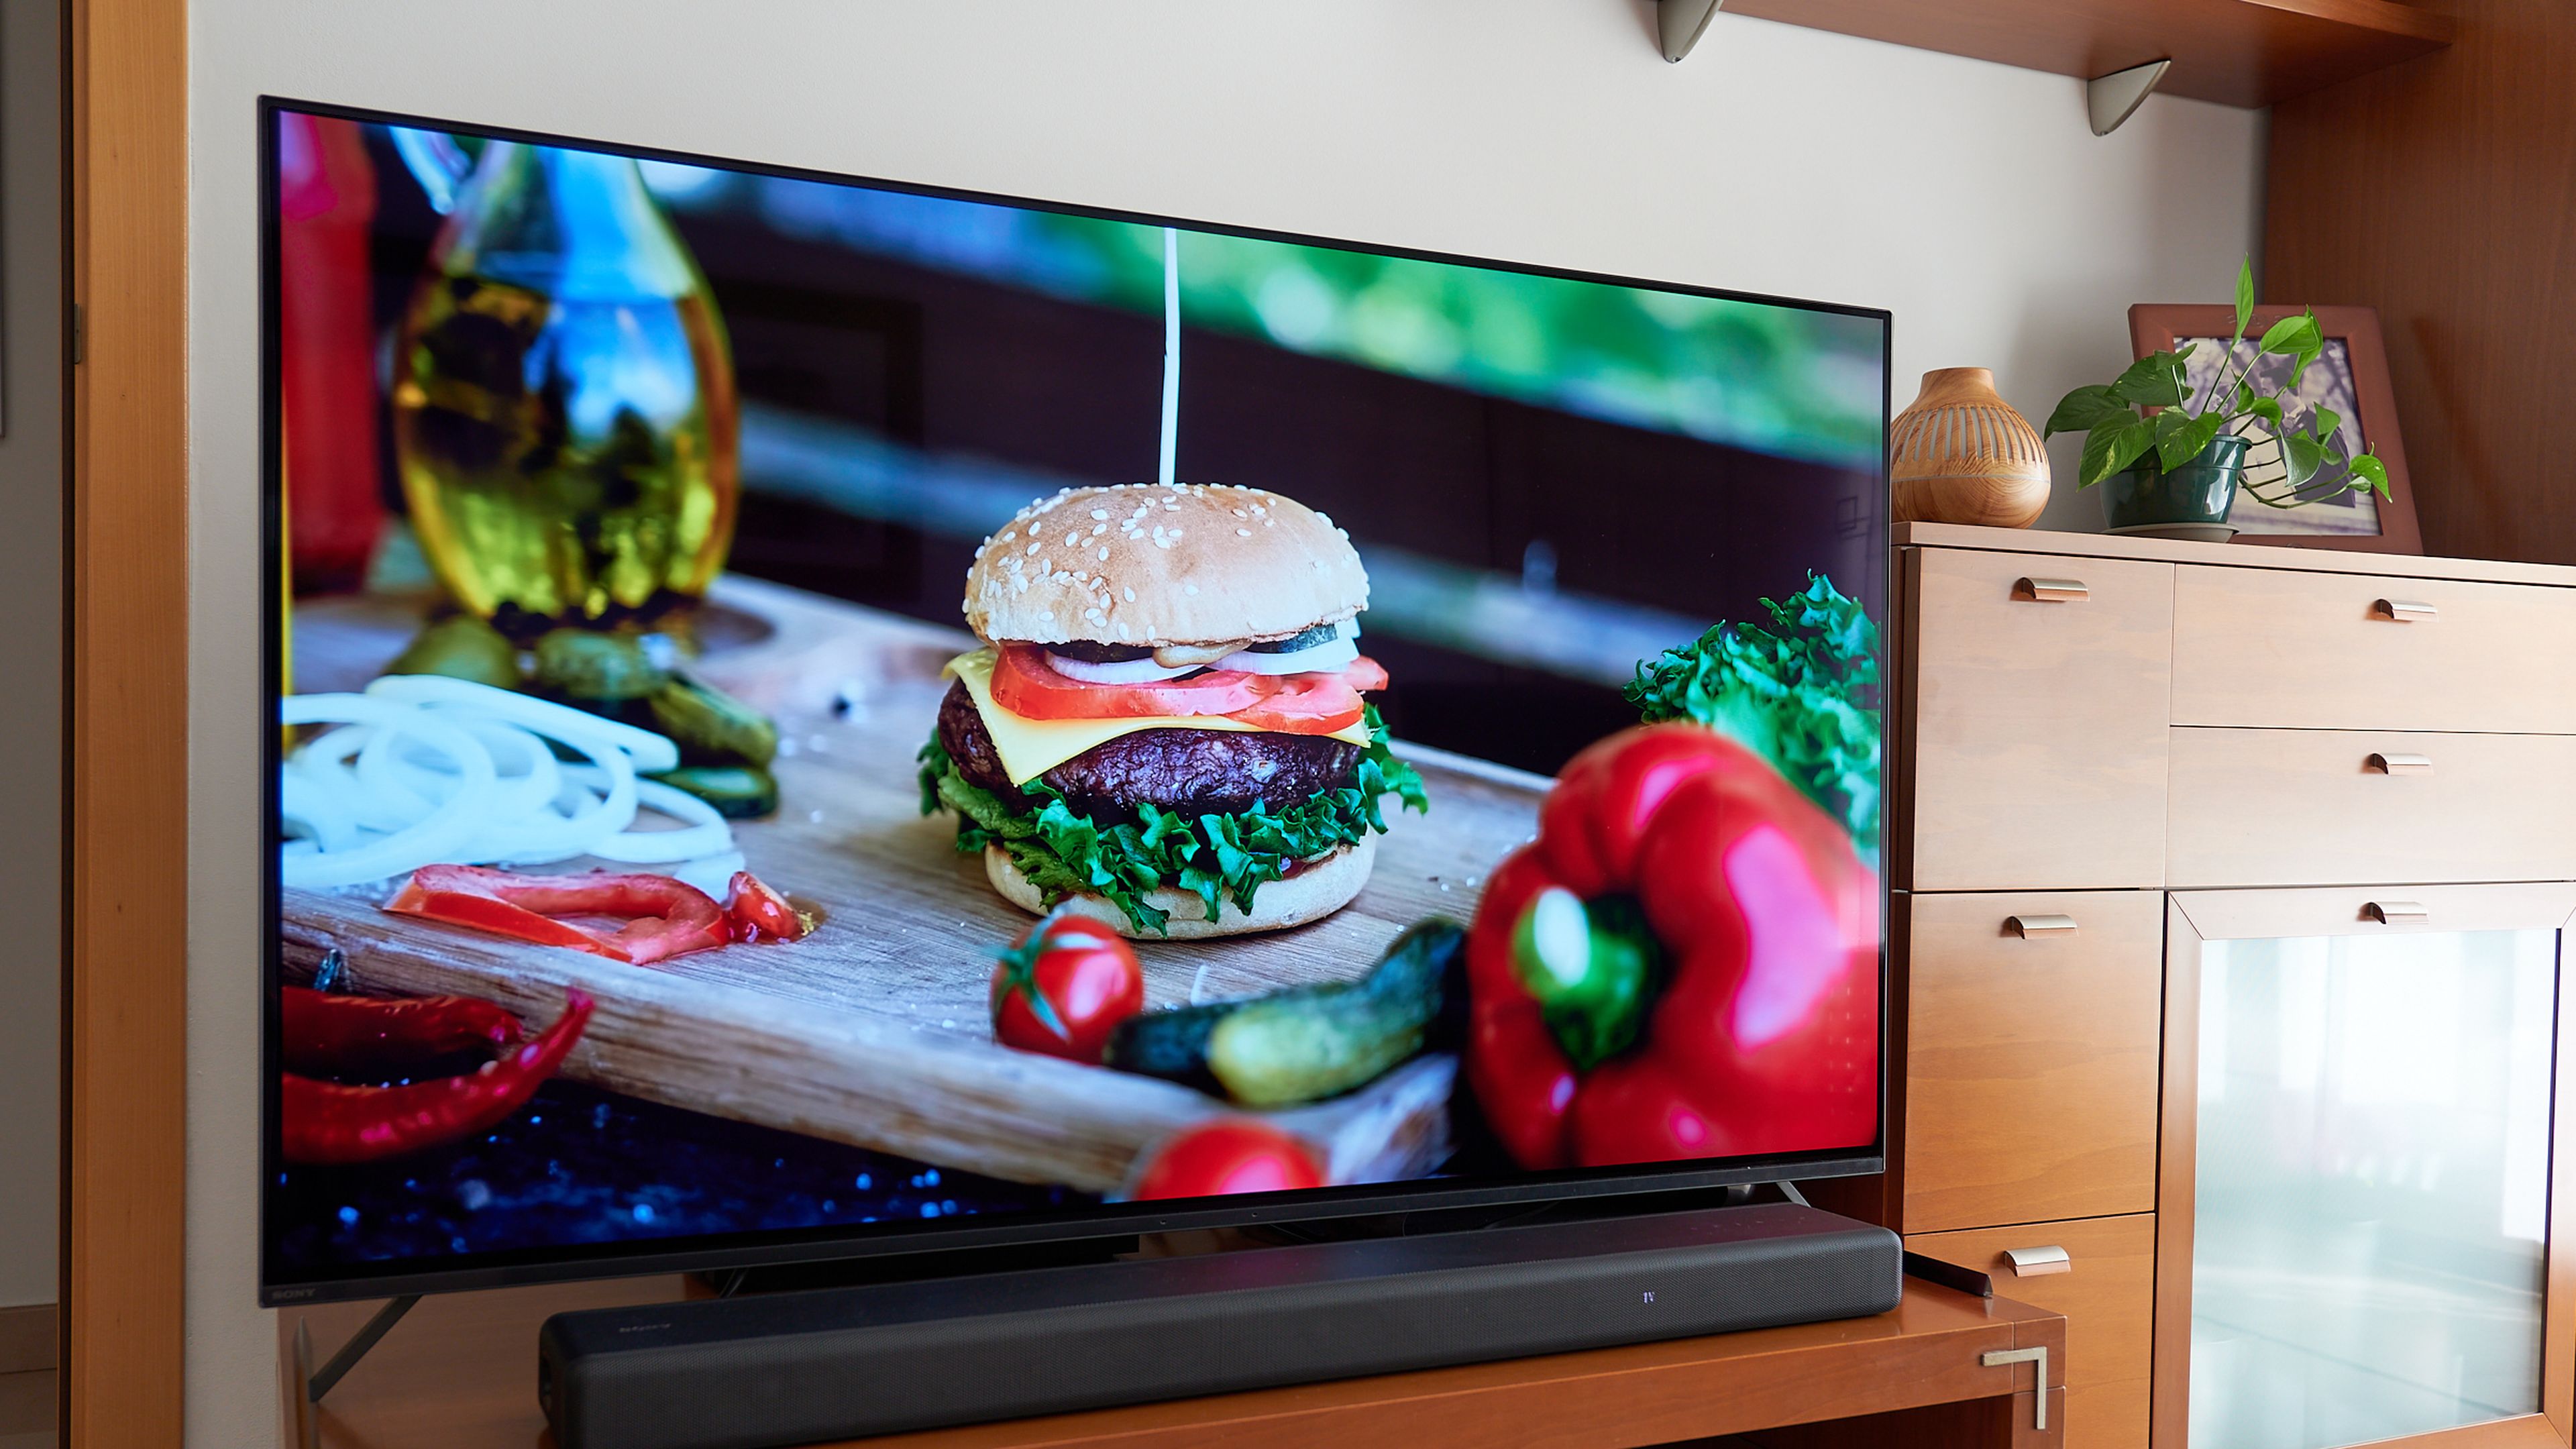 Pantalla de 55 pulgadas, HDMI 2.1 y Dolby Atmos: esta smart TV Philips con  descuento se queda a su precio más bajo